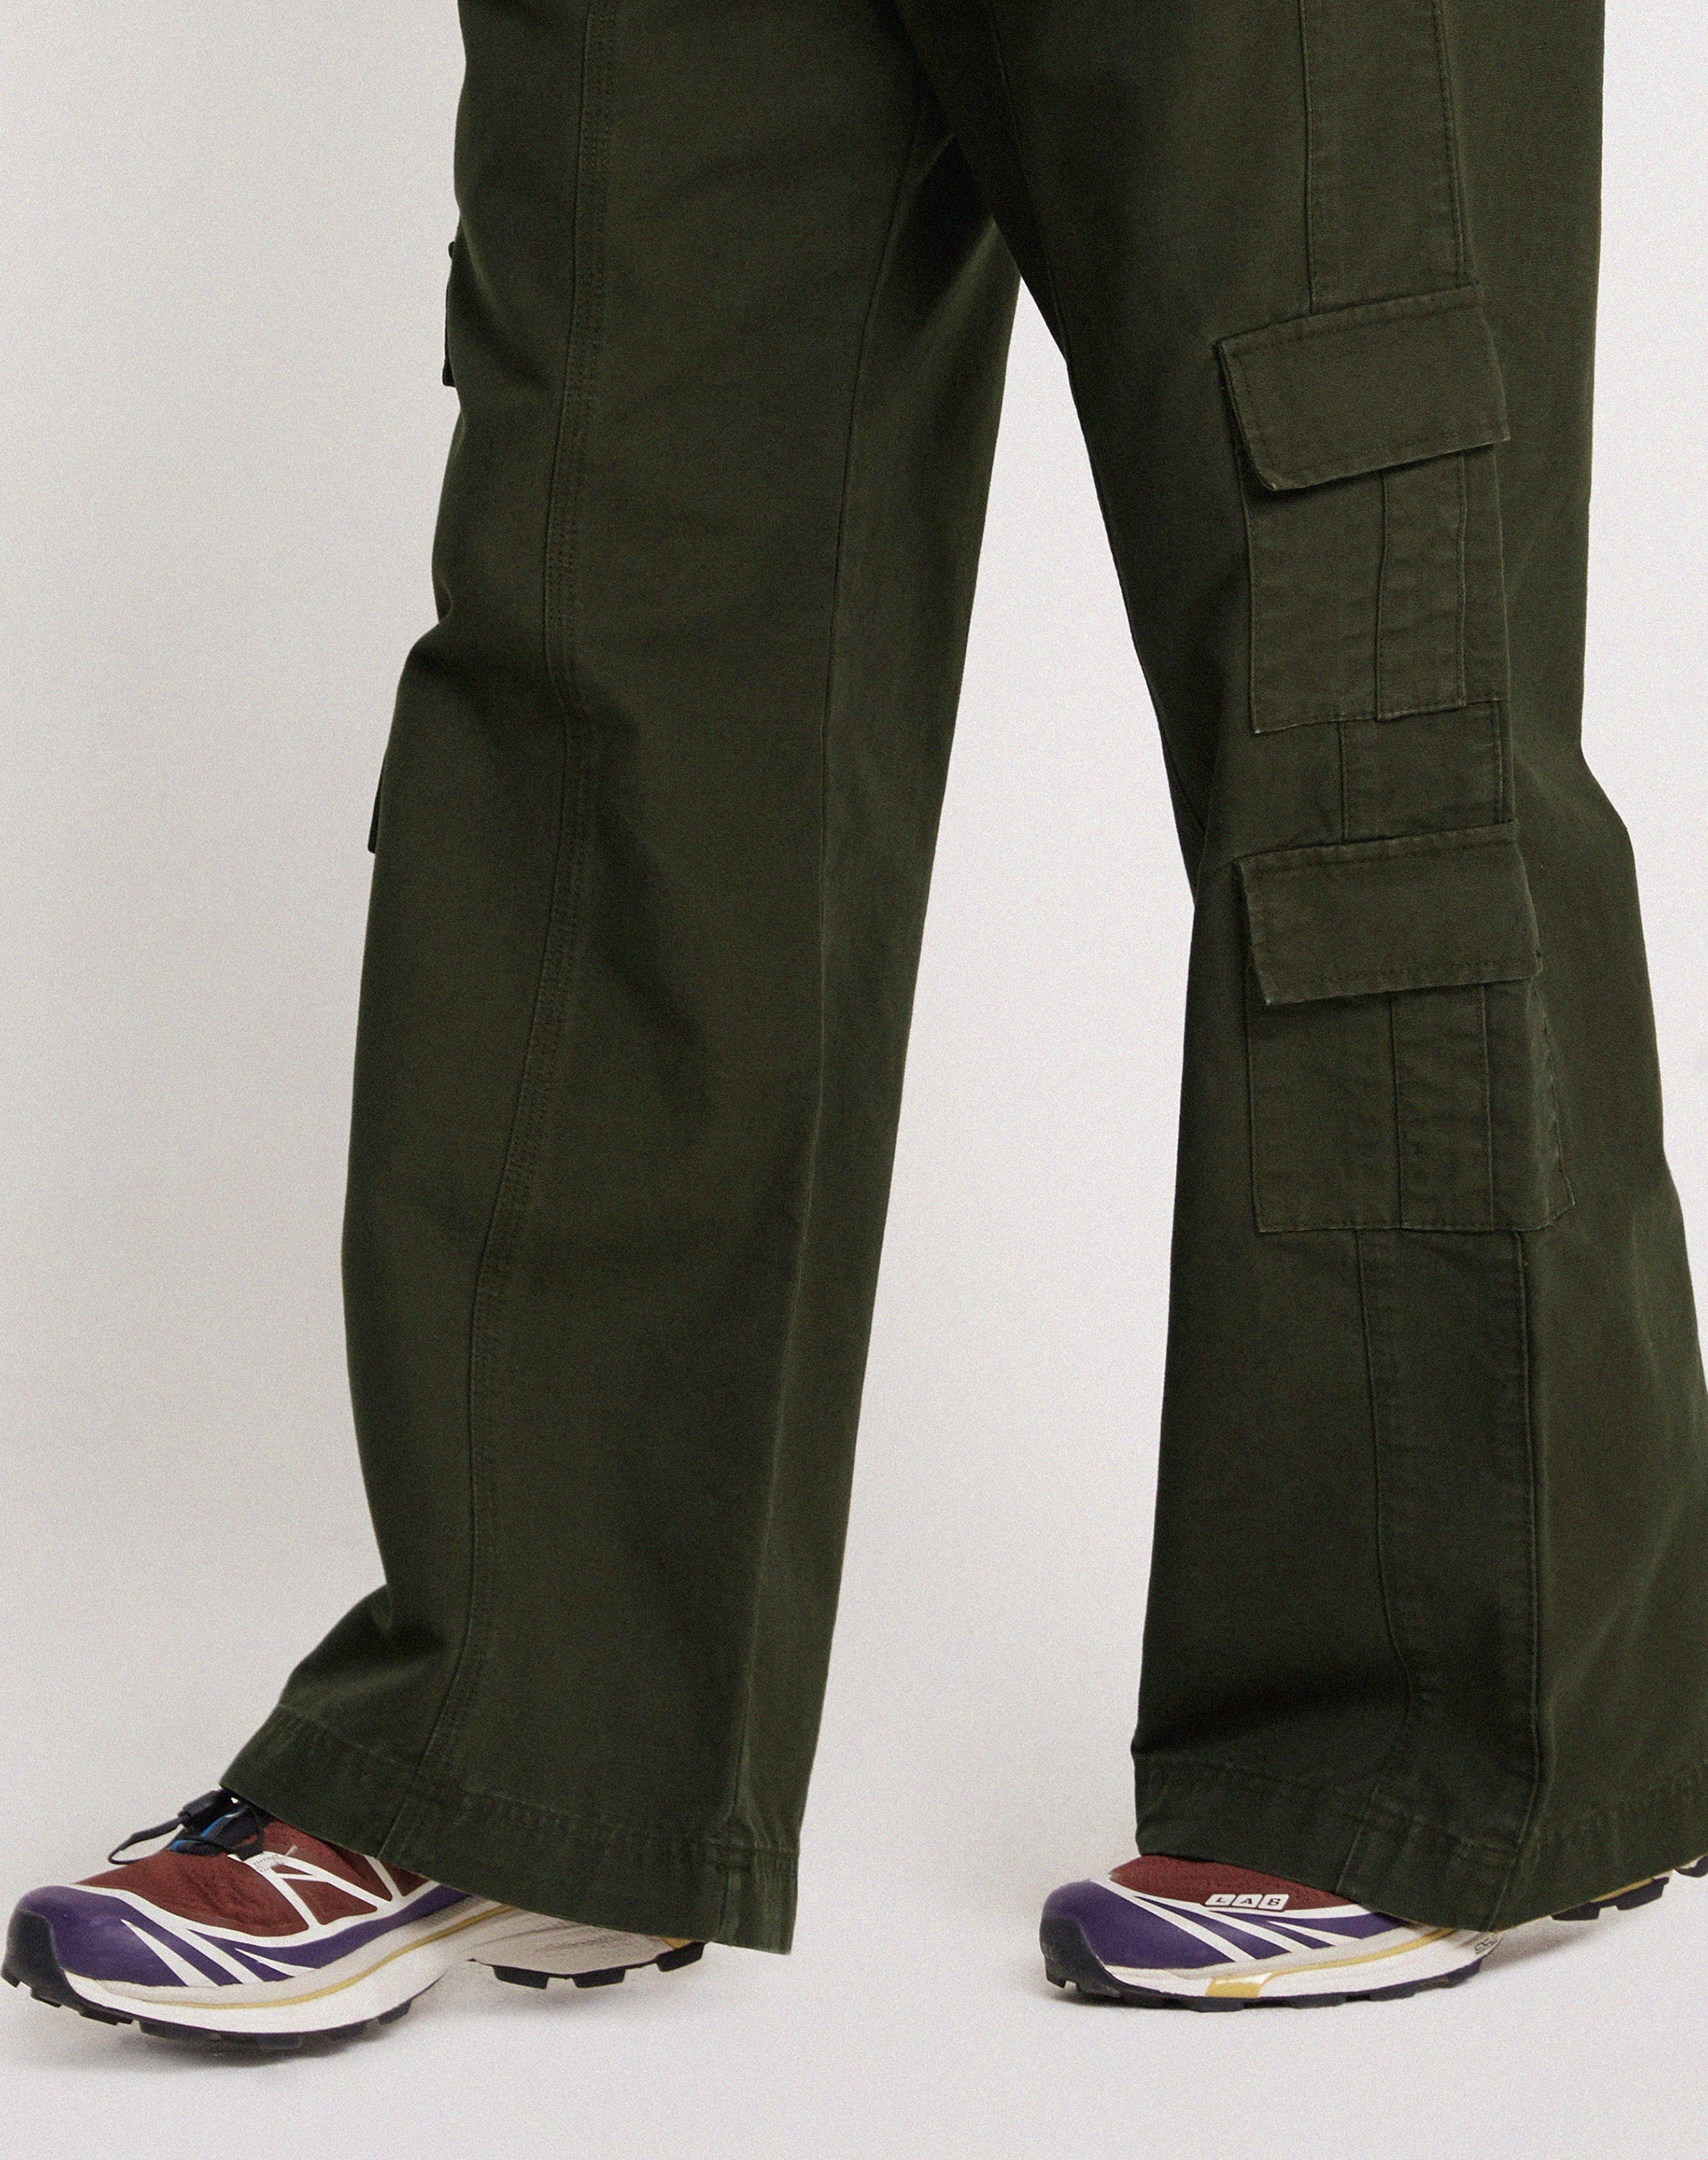 Imagen de los pantalones Hansa Cargo en color oliva oscuro